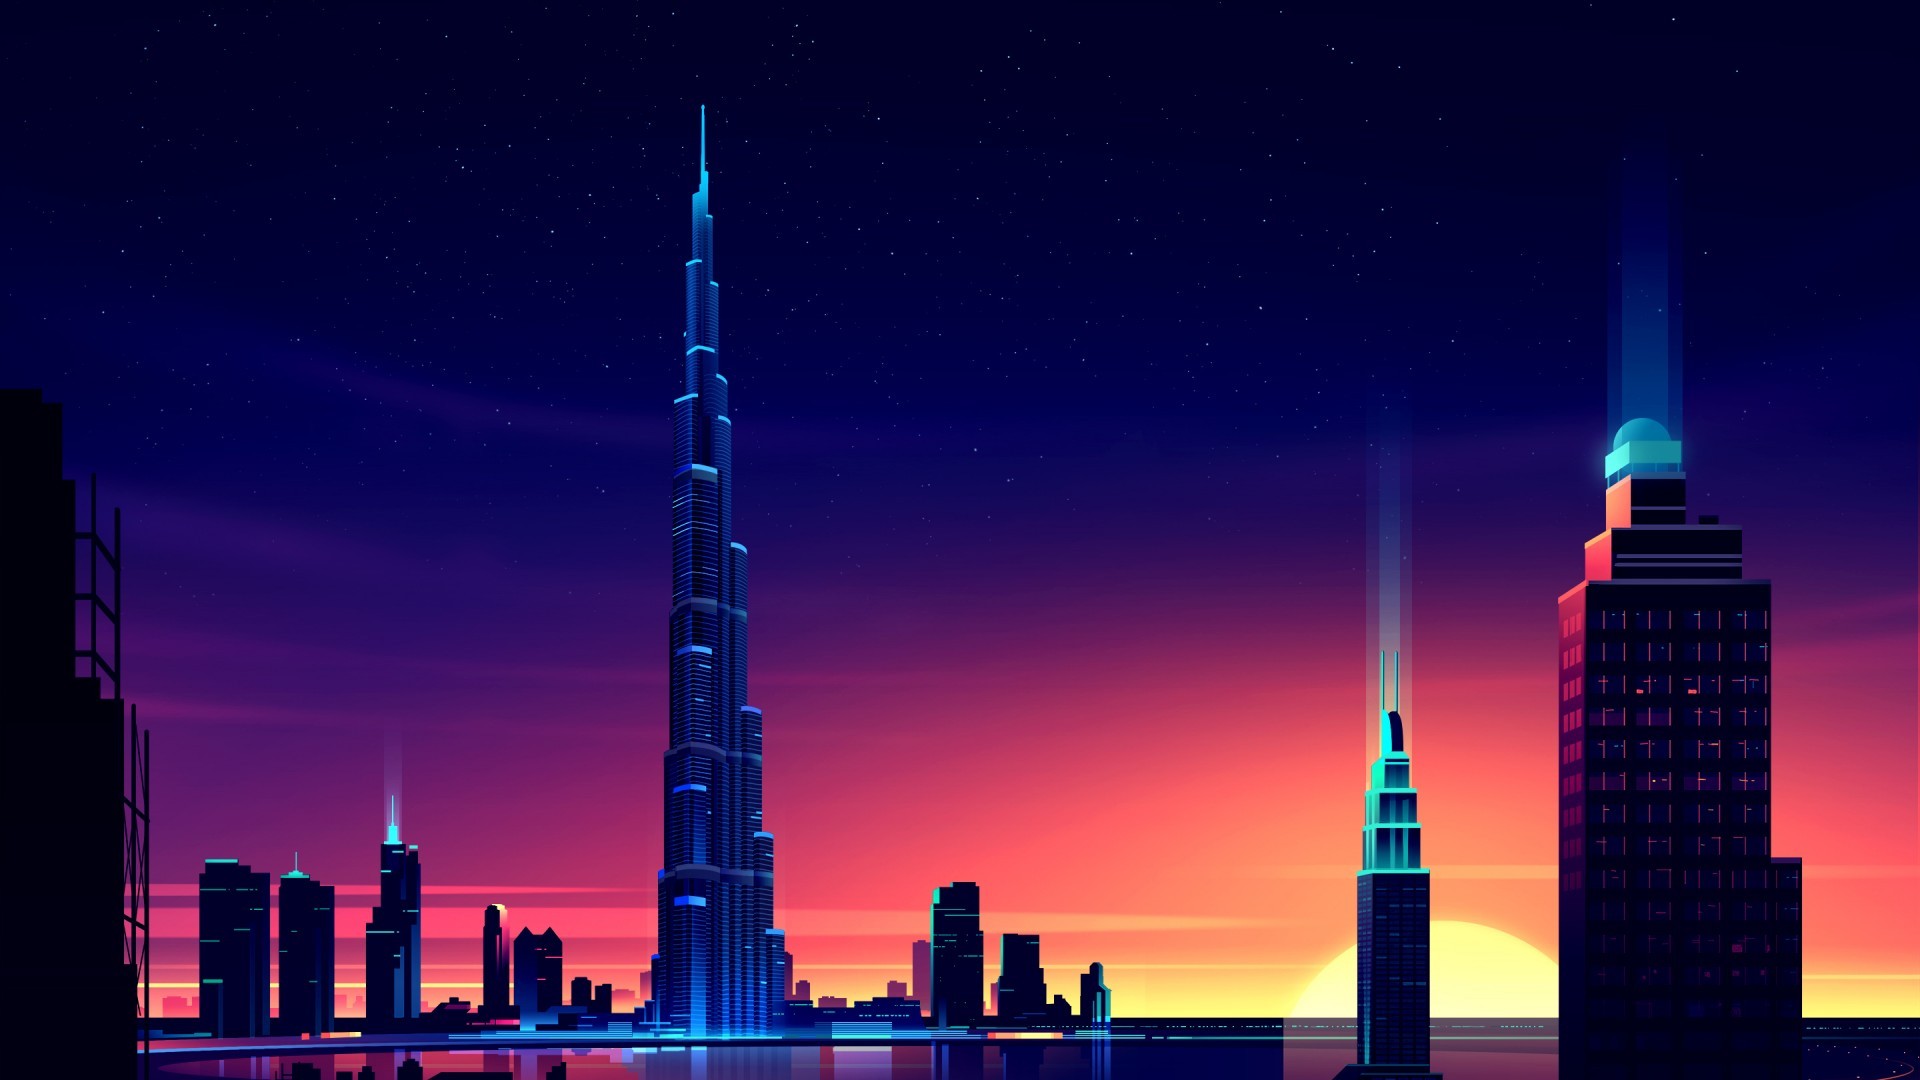 Pixels Skyscraper Burj Khalifa Dubai Night Cityscape Colorful Illustration Lights Sunset Romain Trys 1920x1080